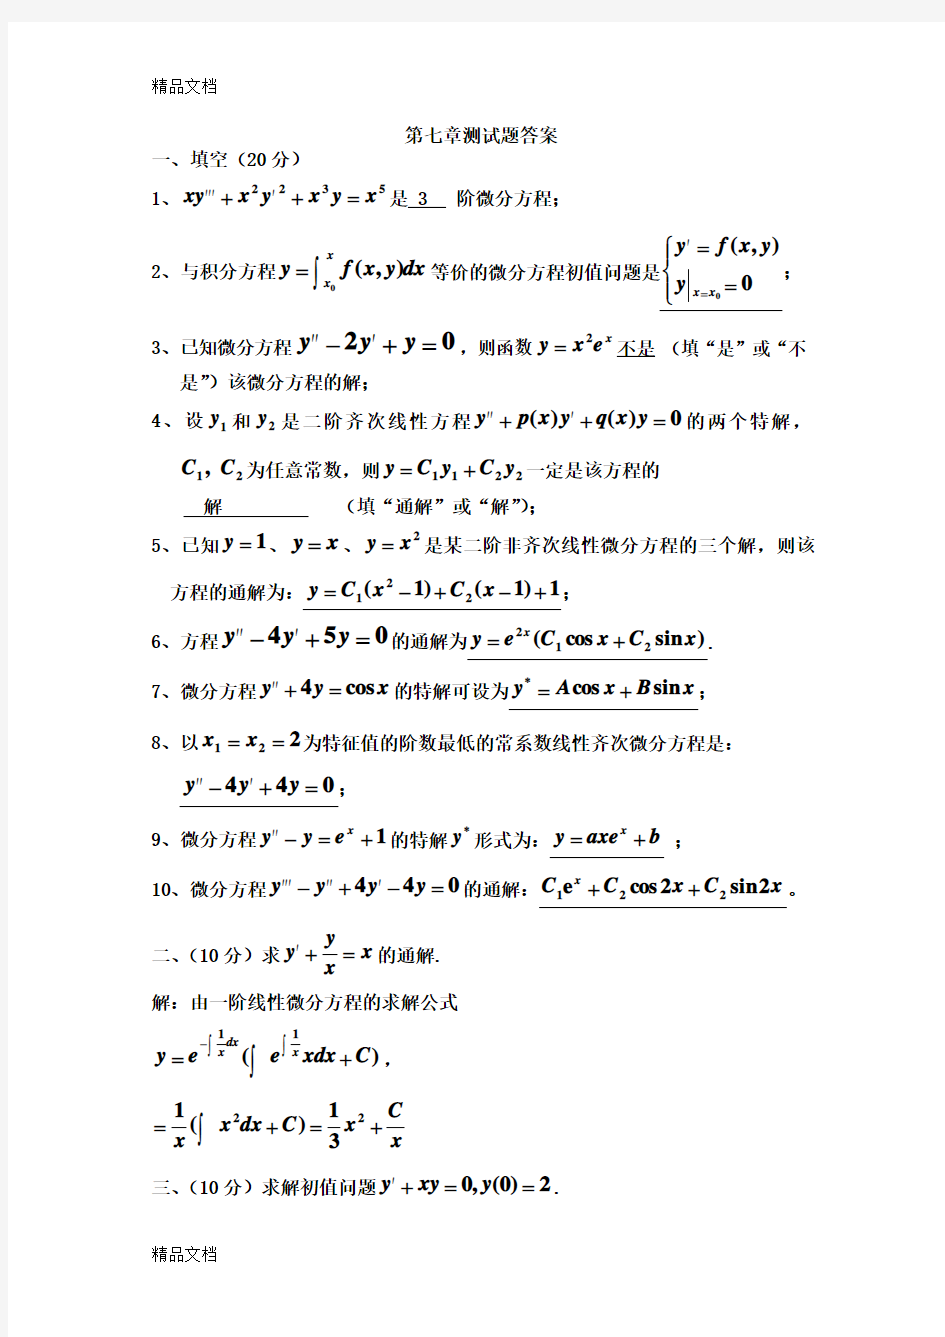 高等数学第七章测试题答案(第7版)复习进程